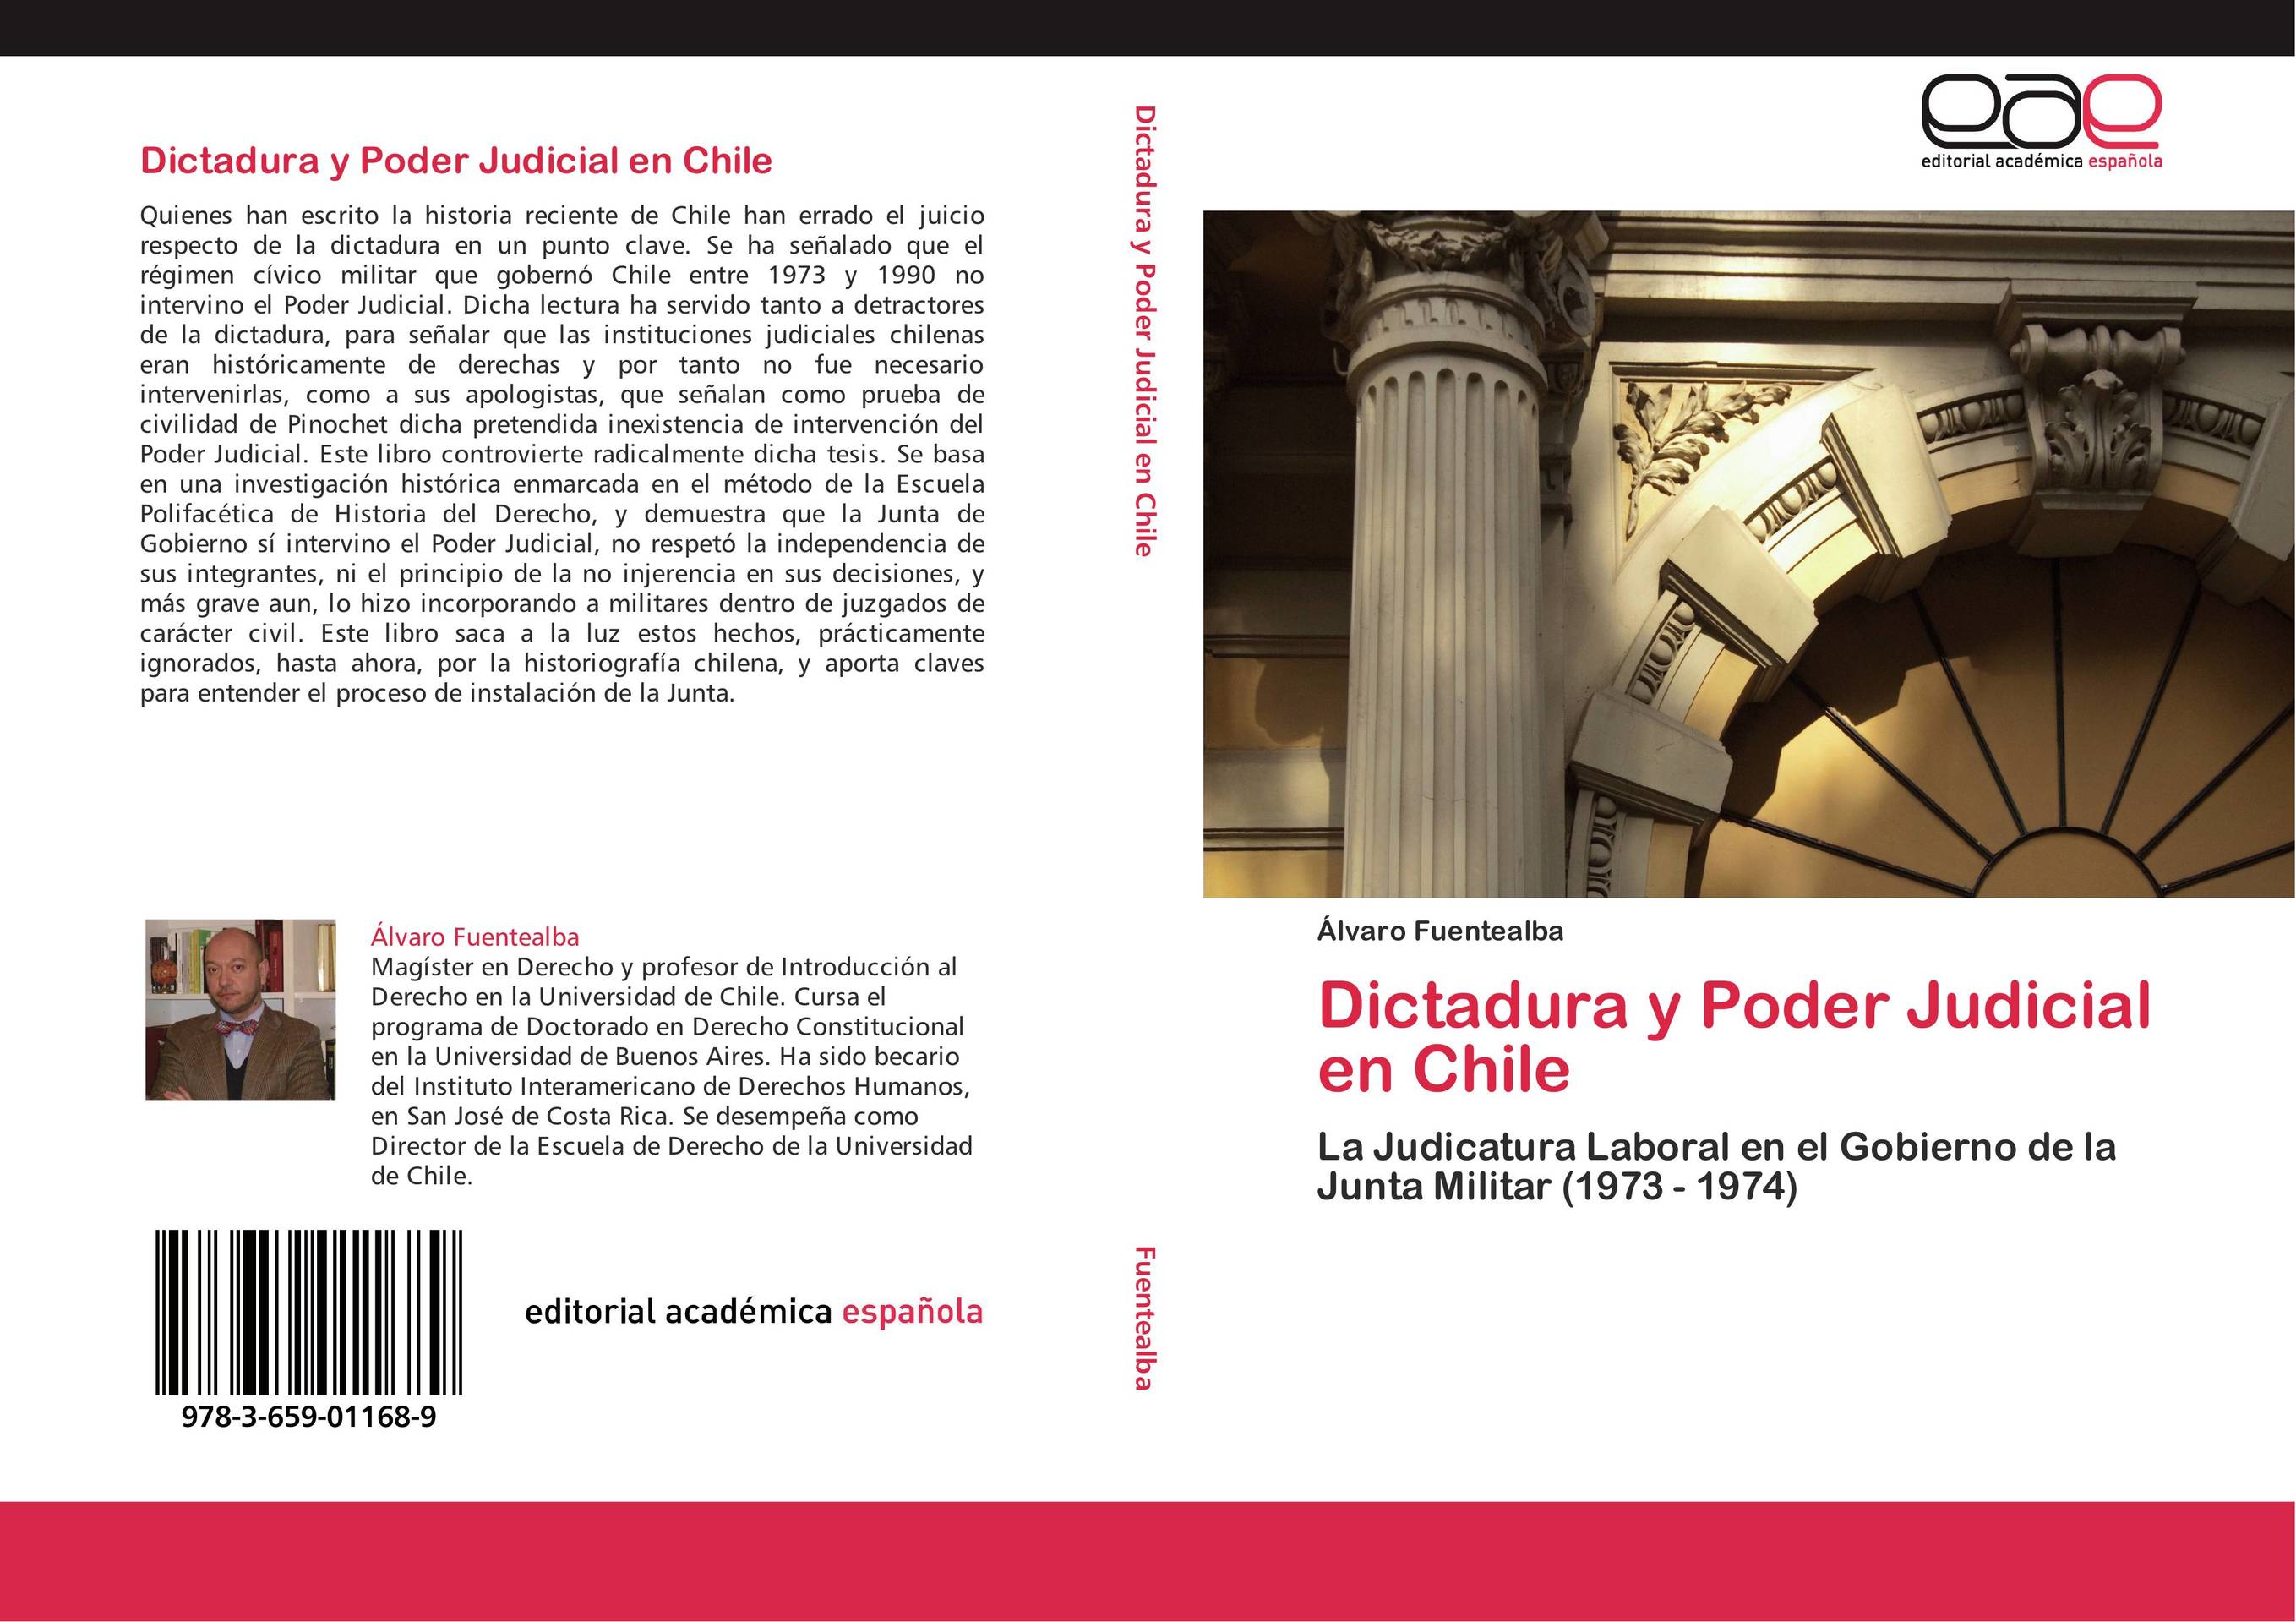 Dictadura y Poder Judicial en Chile